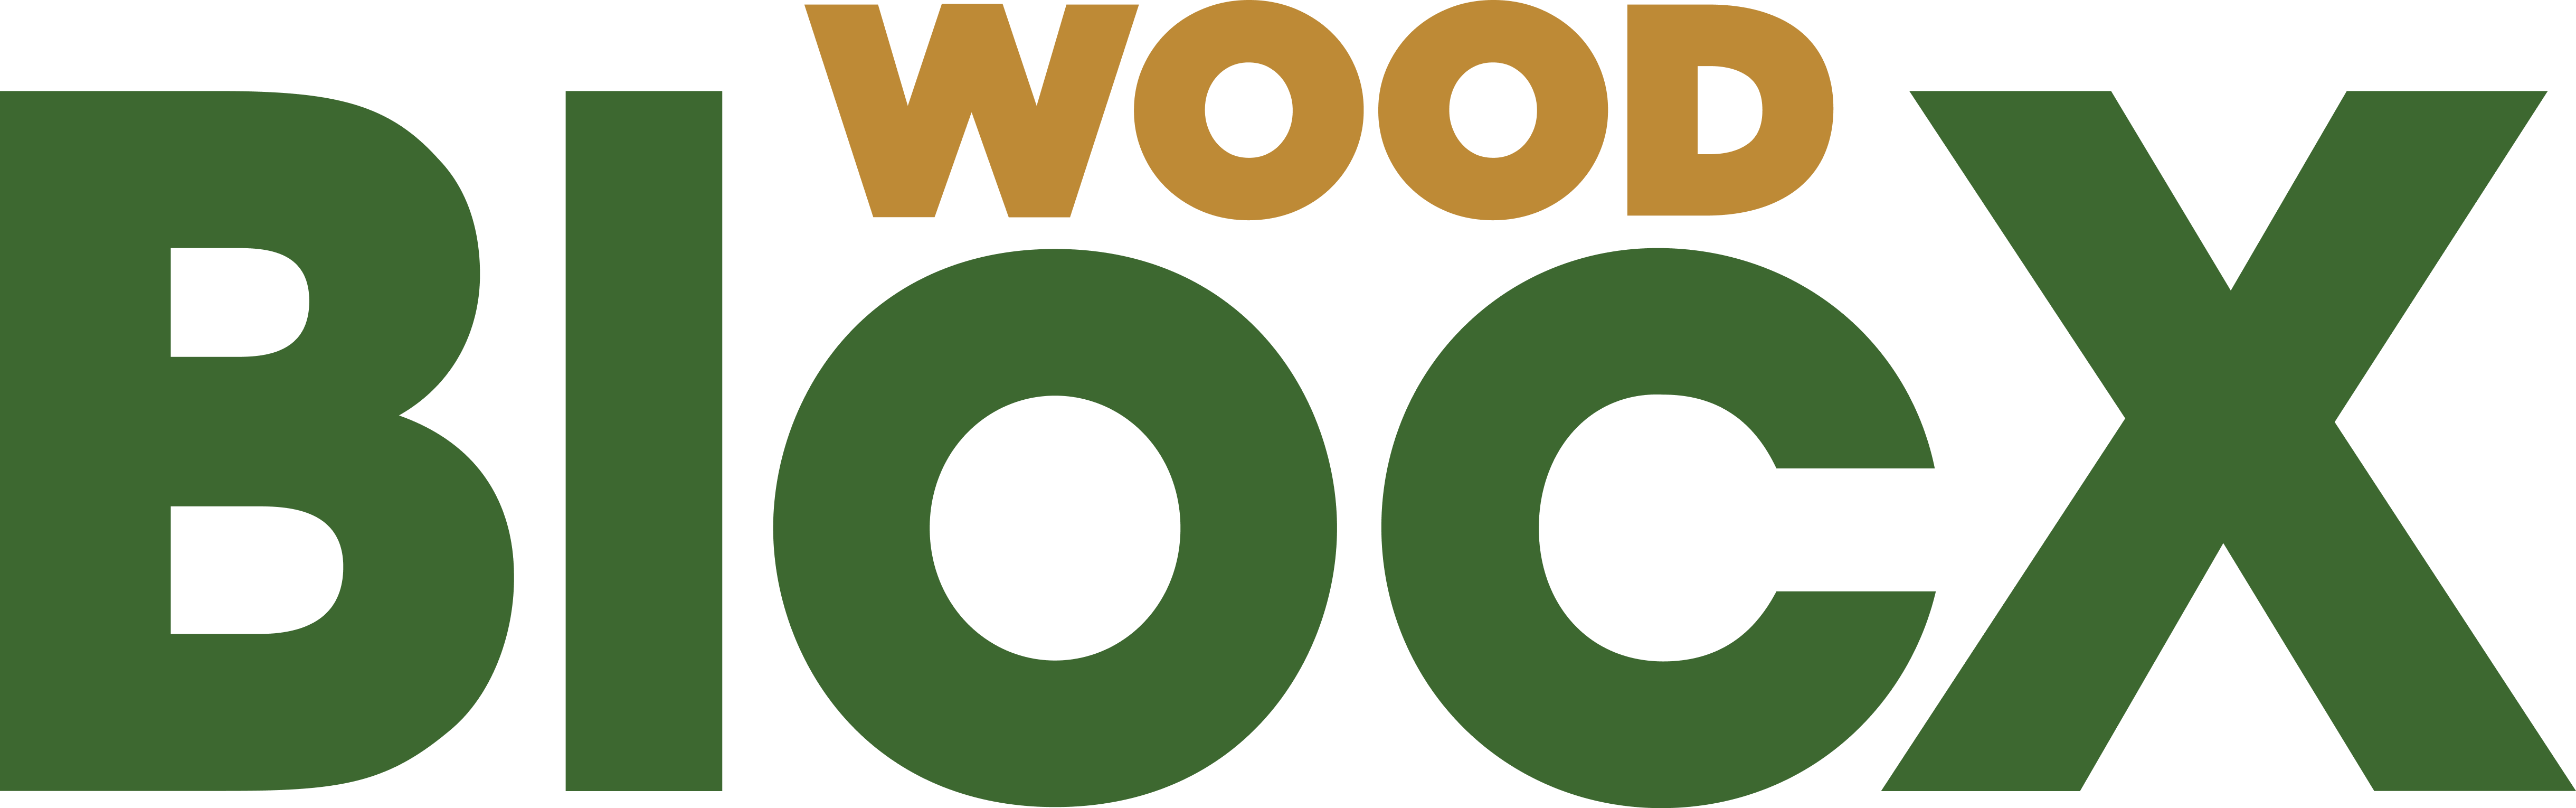 Wood Bloc X